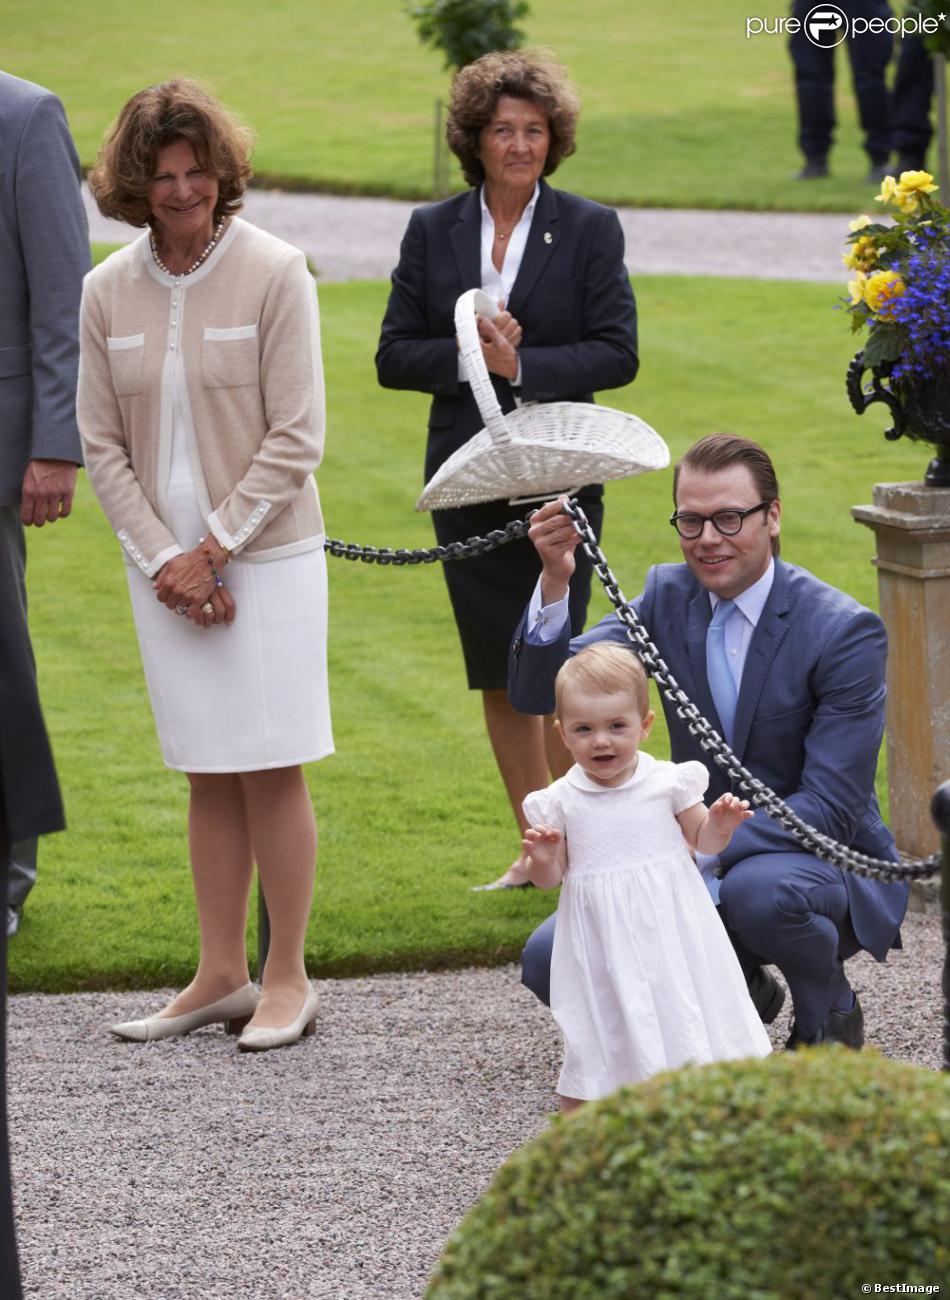  La princesse Estelle s&#039;élance comme une grande sous le regard de son père et sa mamie. La princesse Victoria de Suède fêtait son 36e anniversaire le 14 juillet 2013 à Solliden, la résidence royale sur l&#039;île d&#039;Öland, en compagnie du roi Carl XVI Gustaf, de la reine Silvia, du prince Daniel et de leur fille la princesse Estelle, qui a encore une fois charmé le public. 